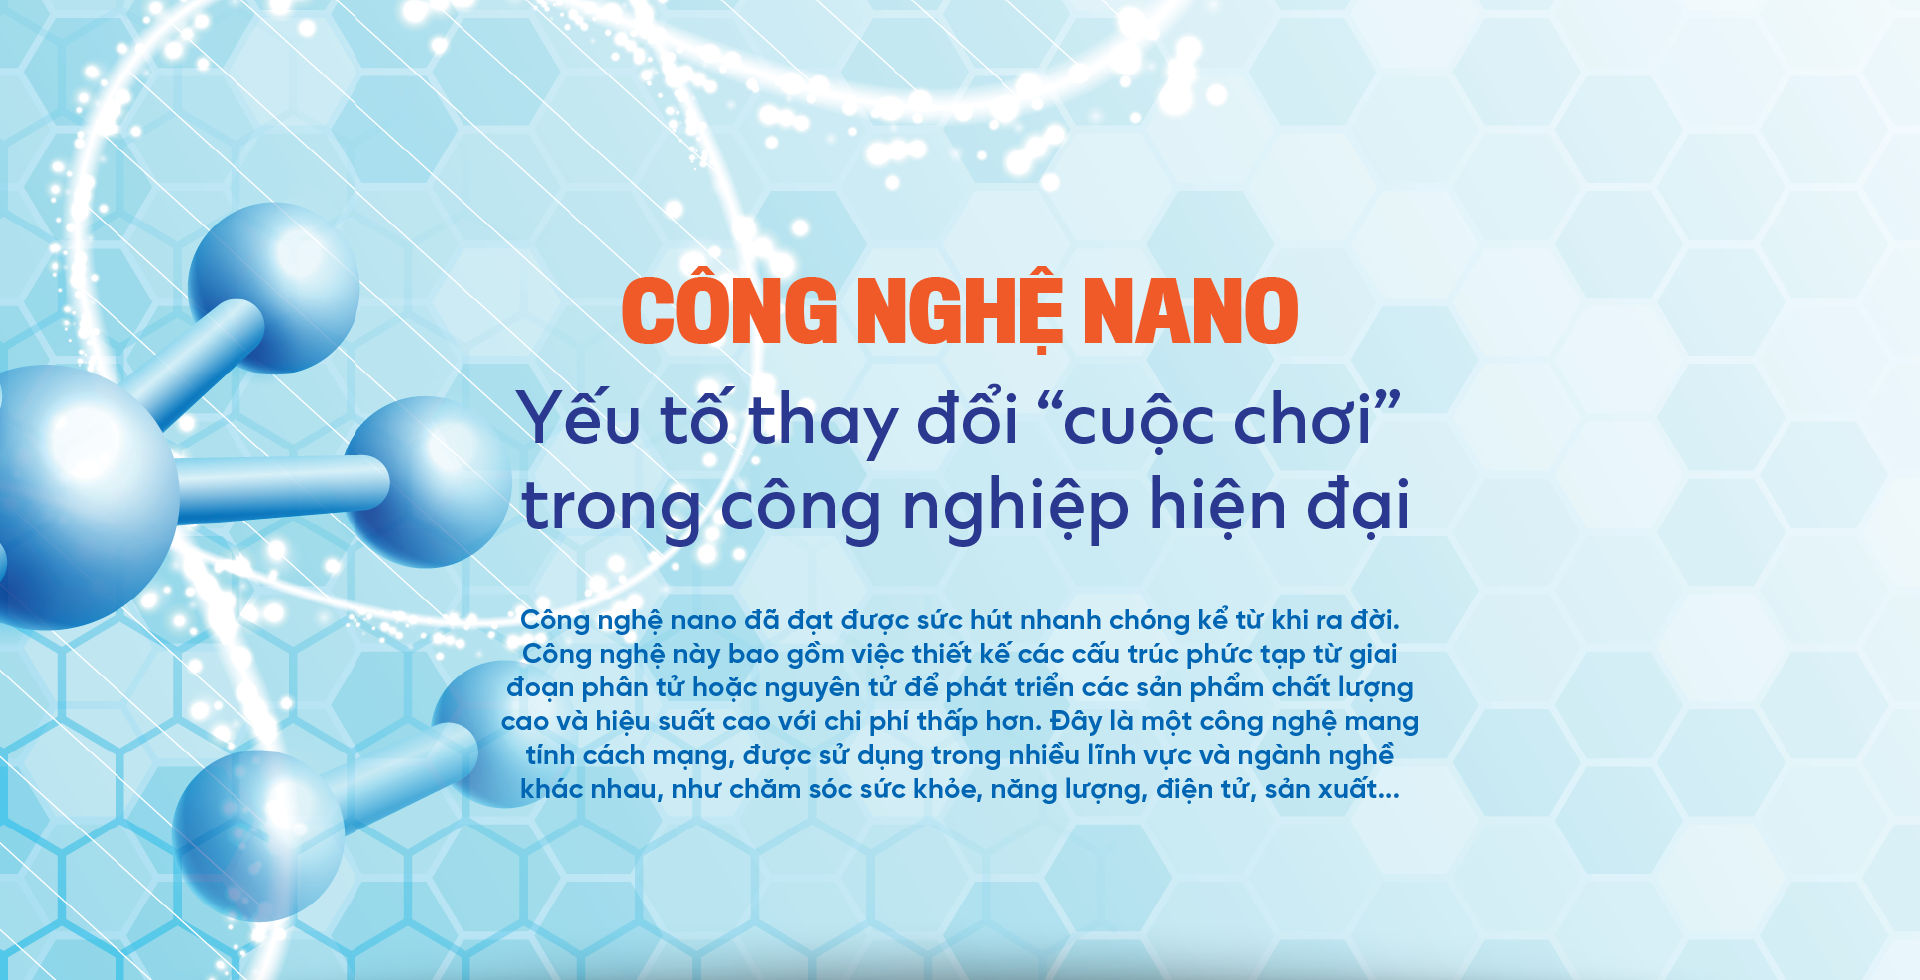 Công nghệ nano: Yếu tố thay đổi “cuộc chơi” trong công nghiệp hiện đại - Ảnh 1